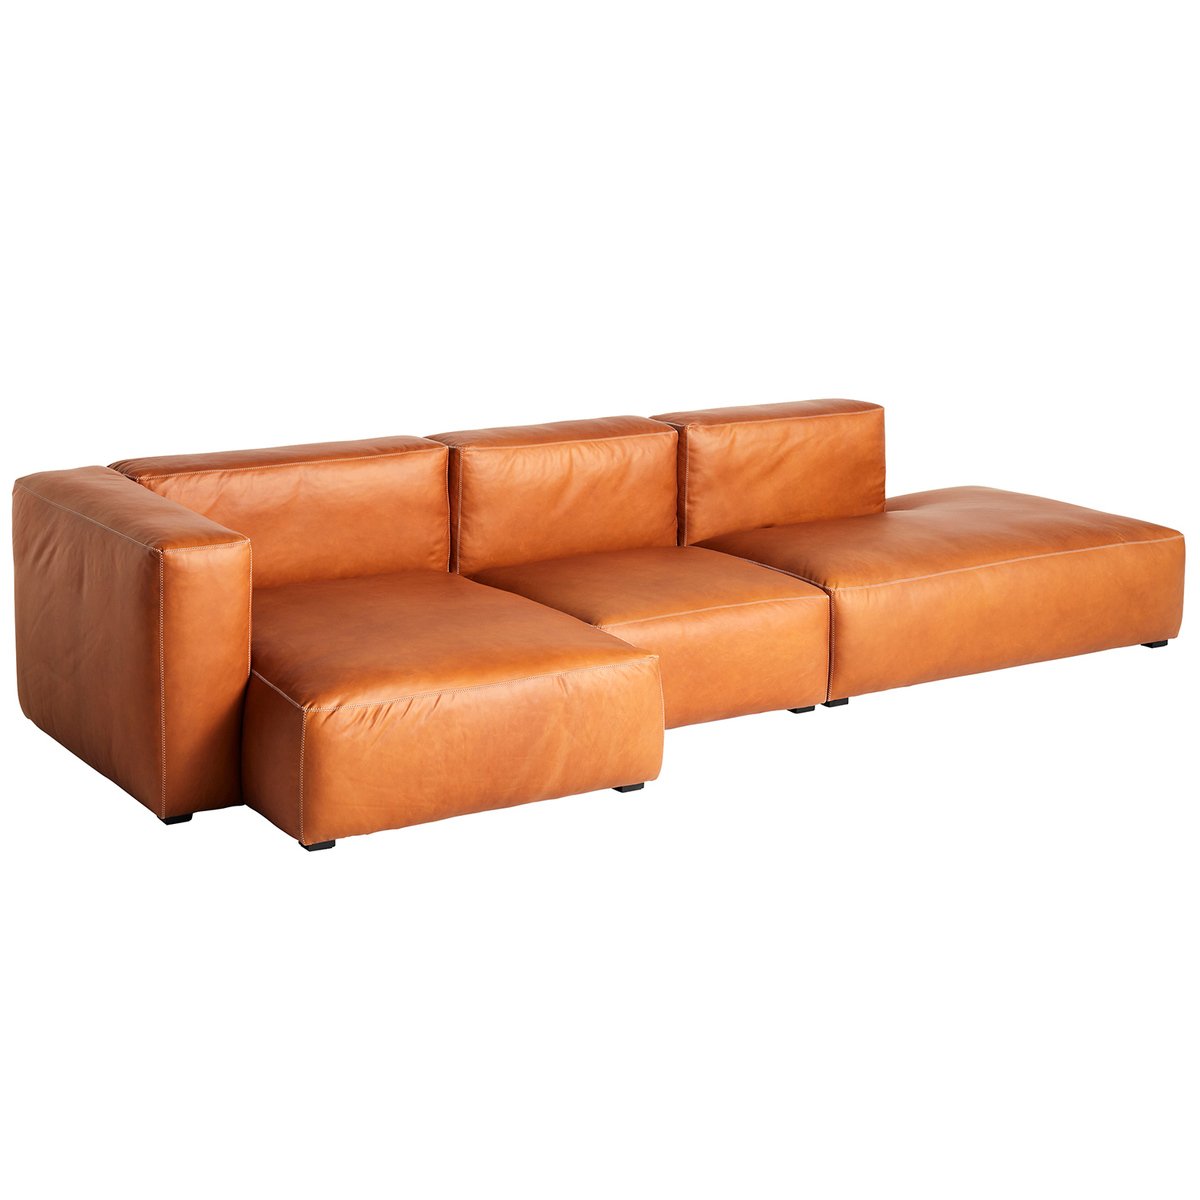 HAY Mags Soft sohva 331 cm, korkea käsinoja vasen, Sense 250 nahka